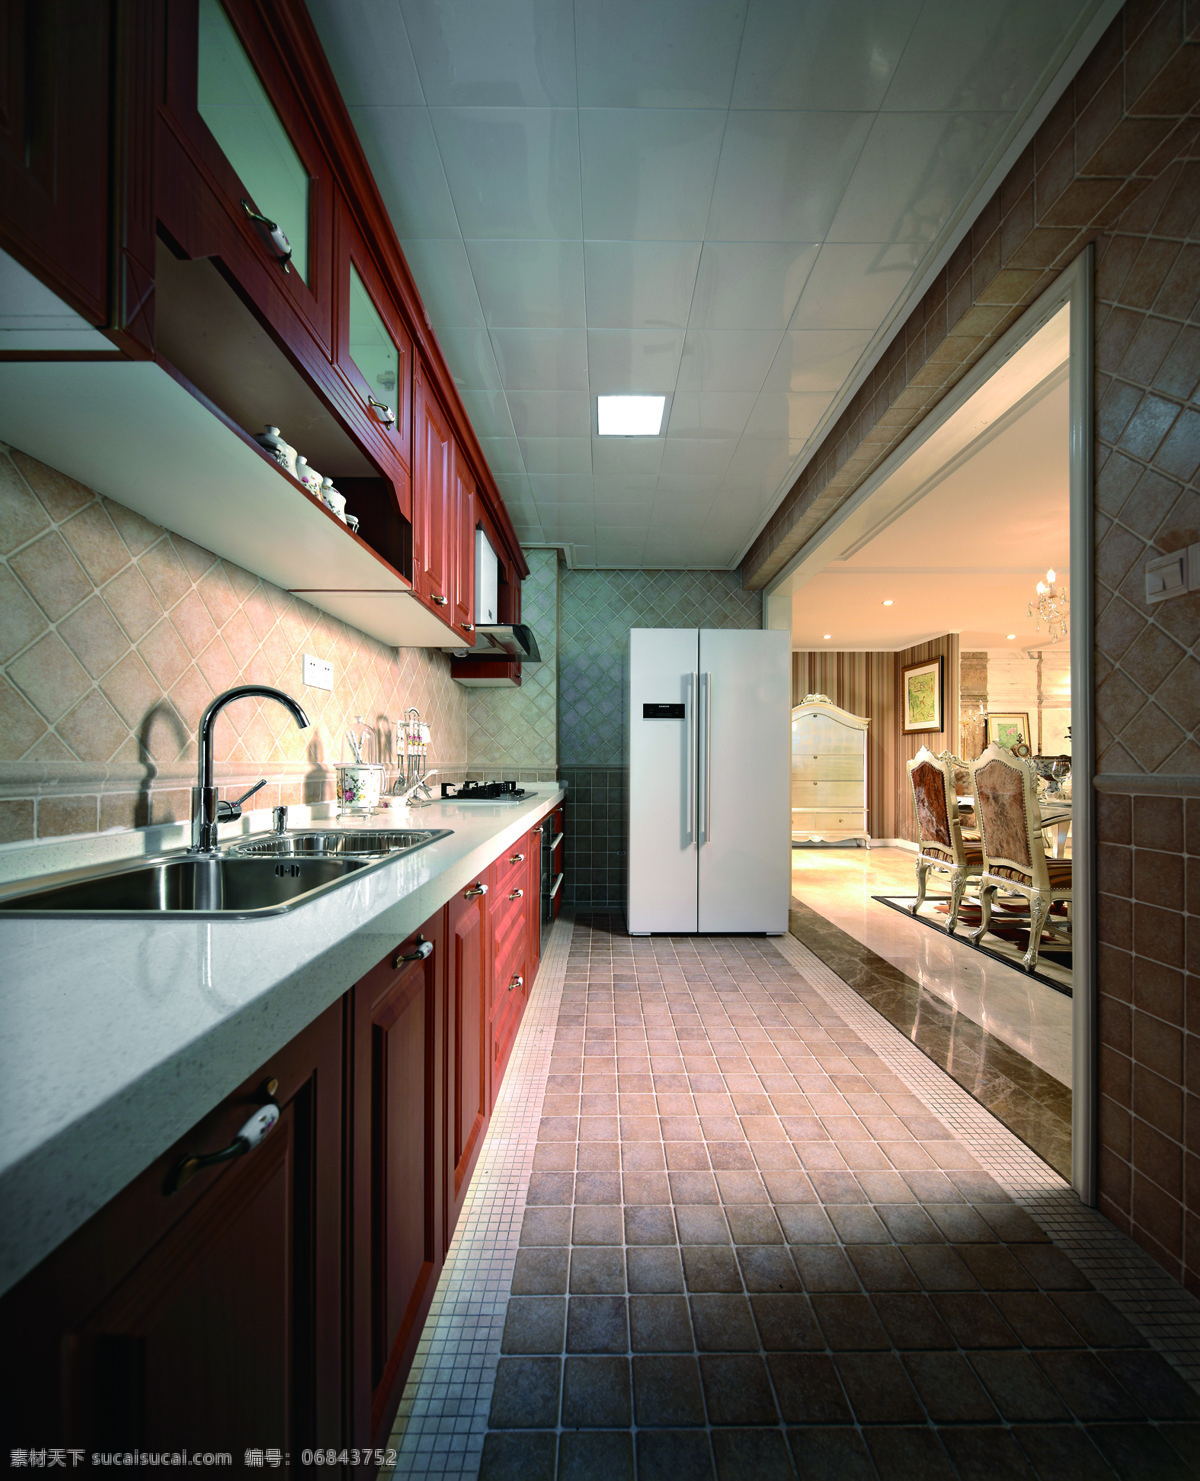 简约 厨房 白色 大理石 台面 装修 效果图 冰箱 方形吊顶 灰色地板砖 木质橱柜 木质吊柜